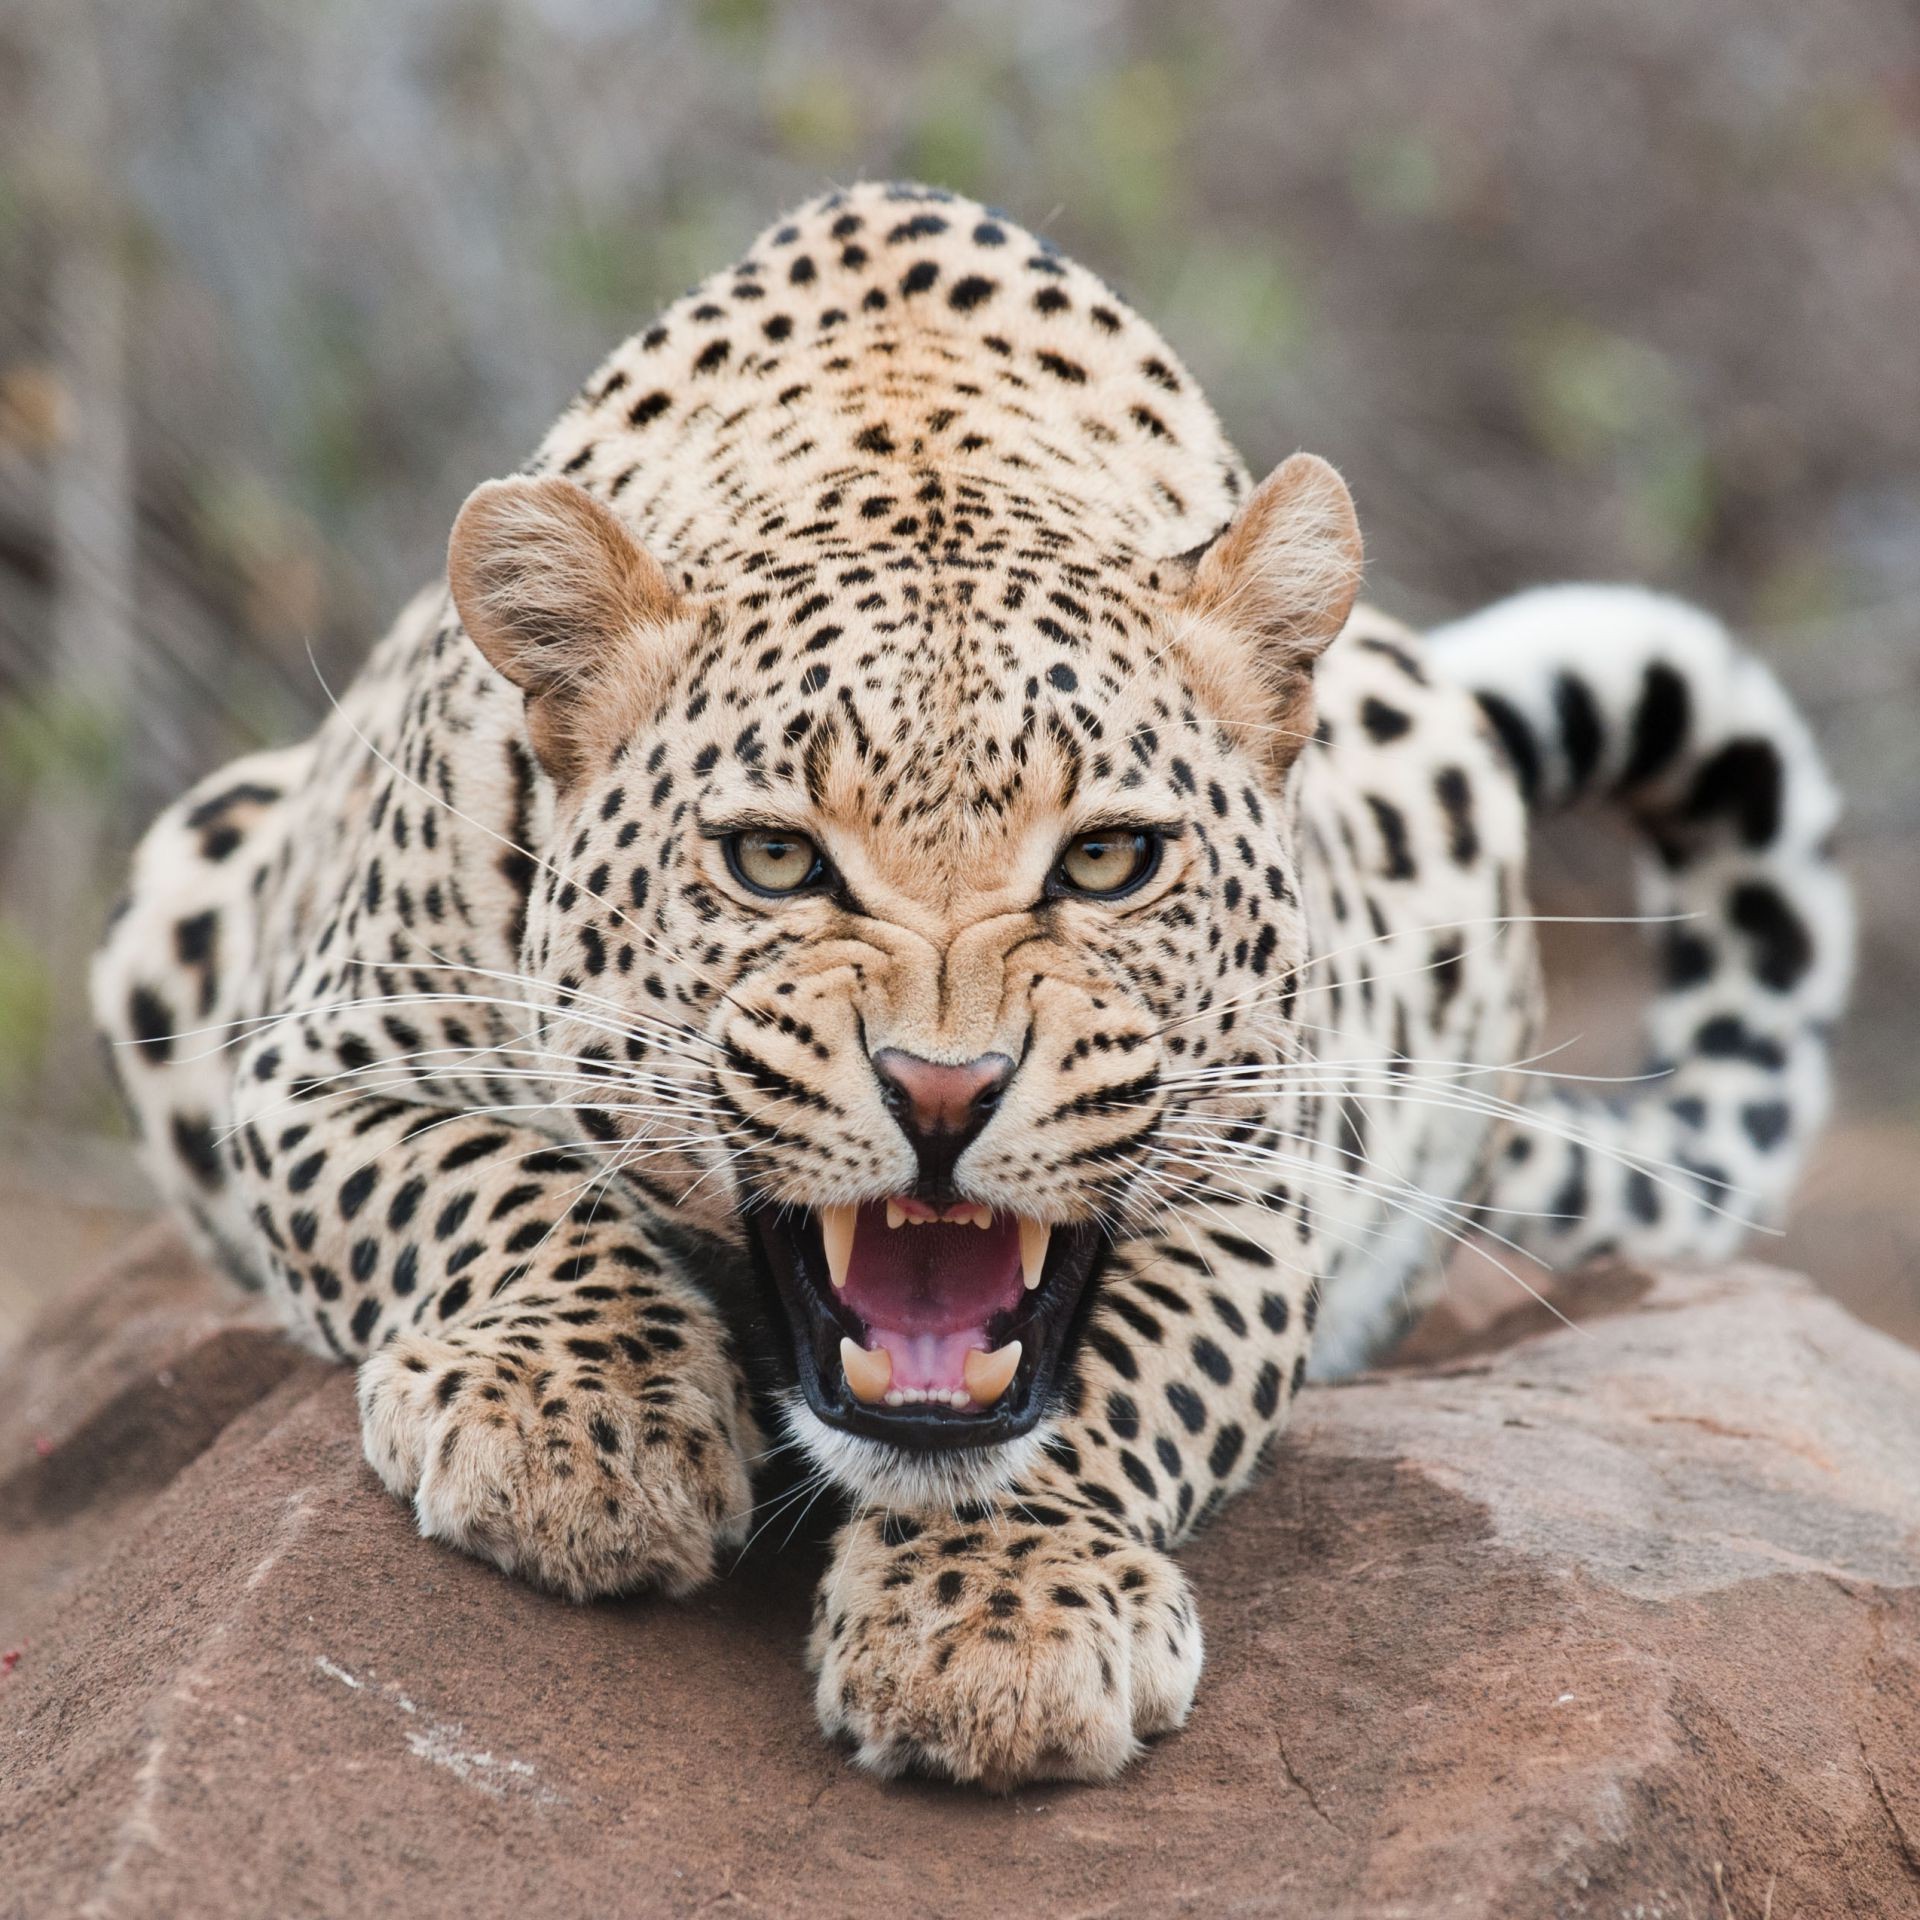 леопарды кошка дикой природы млекопитающее хищник сафари леопард охотник мясоед животное зоопарк мех дикий большой опасность природа глаз джунгли пантера находящихся под угрозой исчезновения тигр